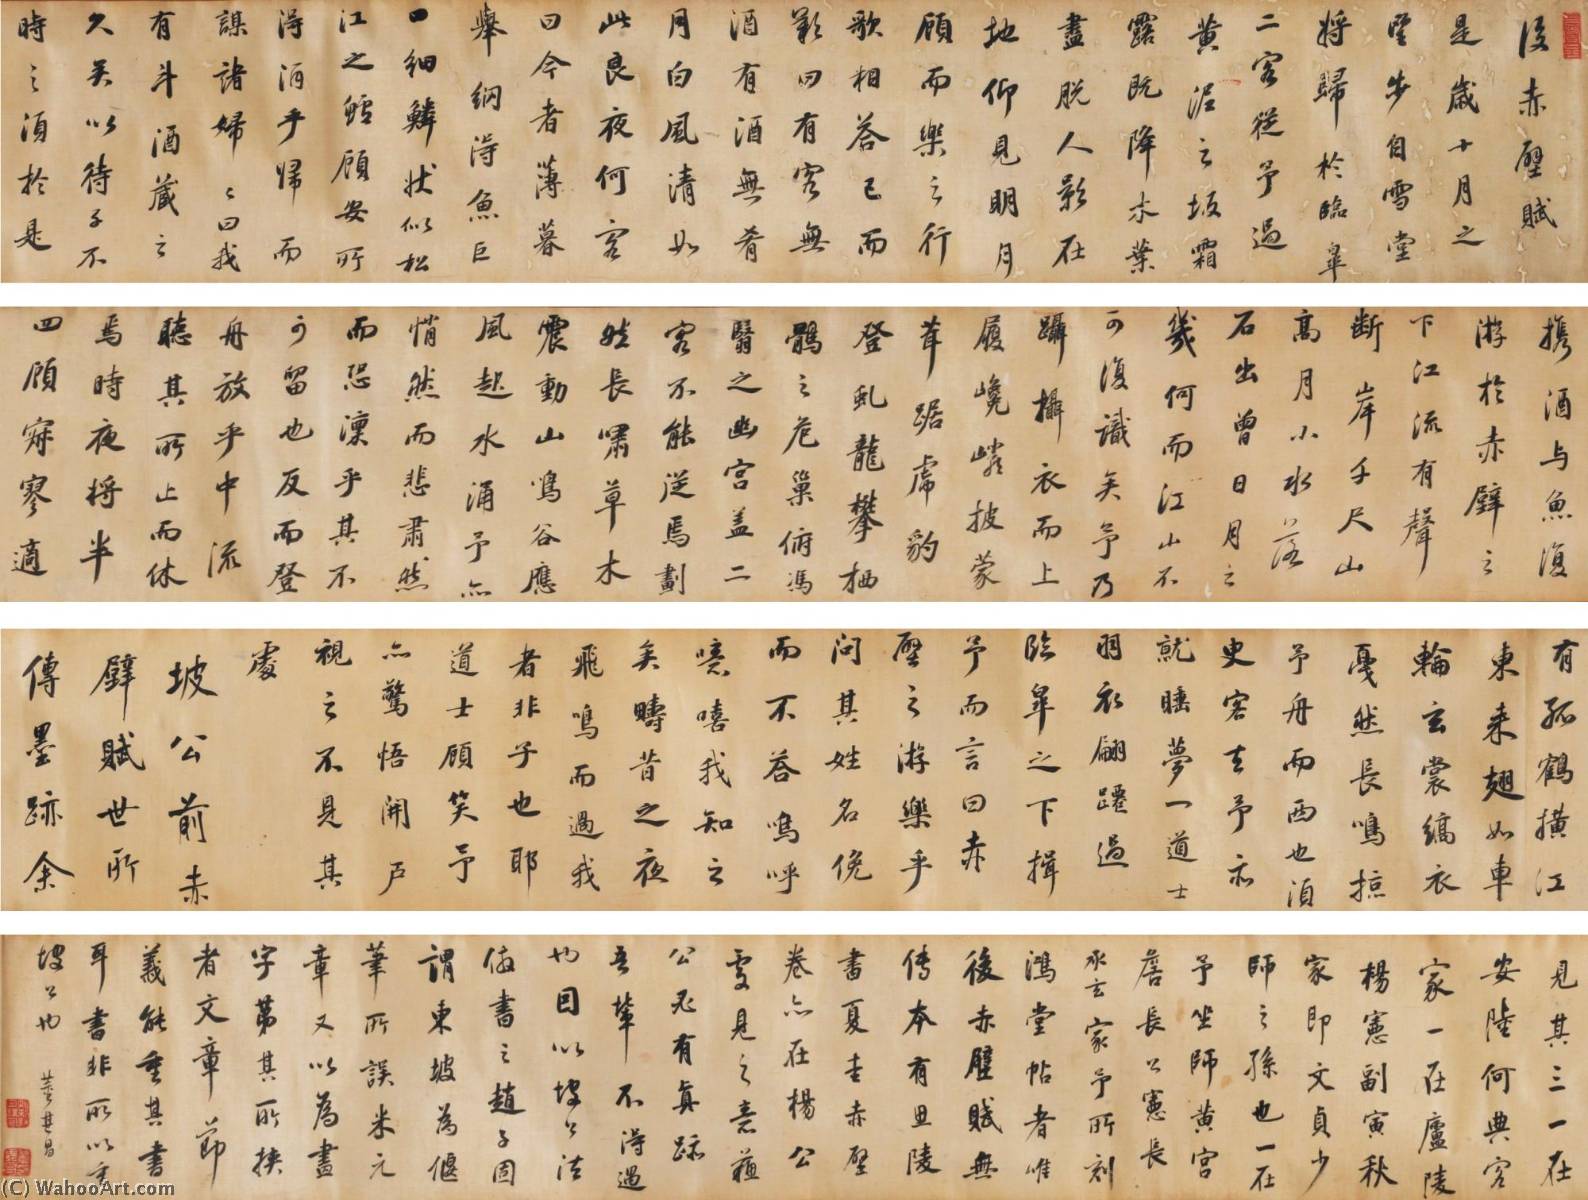 WikiOO.org - Енциклопедия за изящни изкуства - Живопис, Произведения на изкуството Dong Qichang - ODE TO THE RED CLIFF IN RUNNING SCRIPT